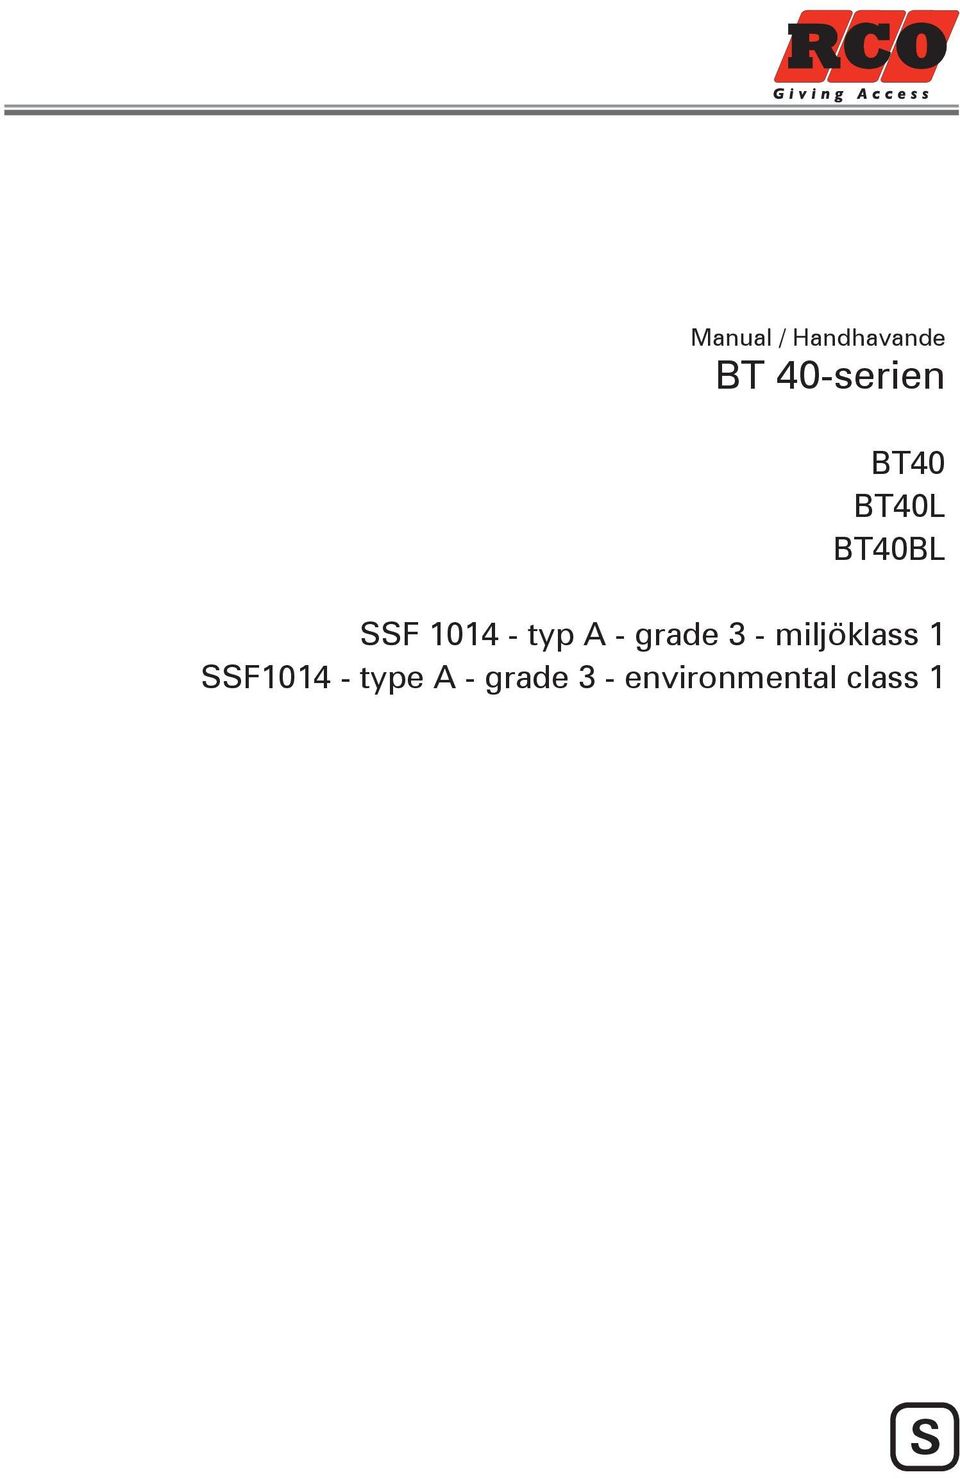 grade 3 - miljöklass 1 SSF1014 -